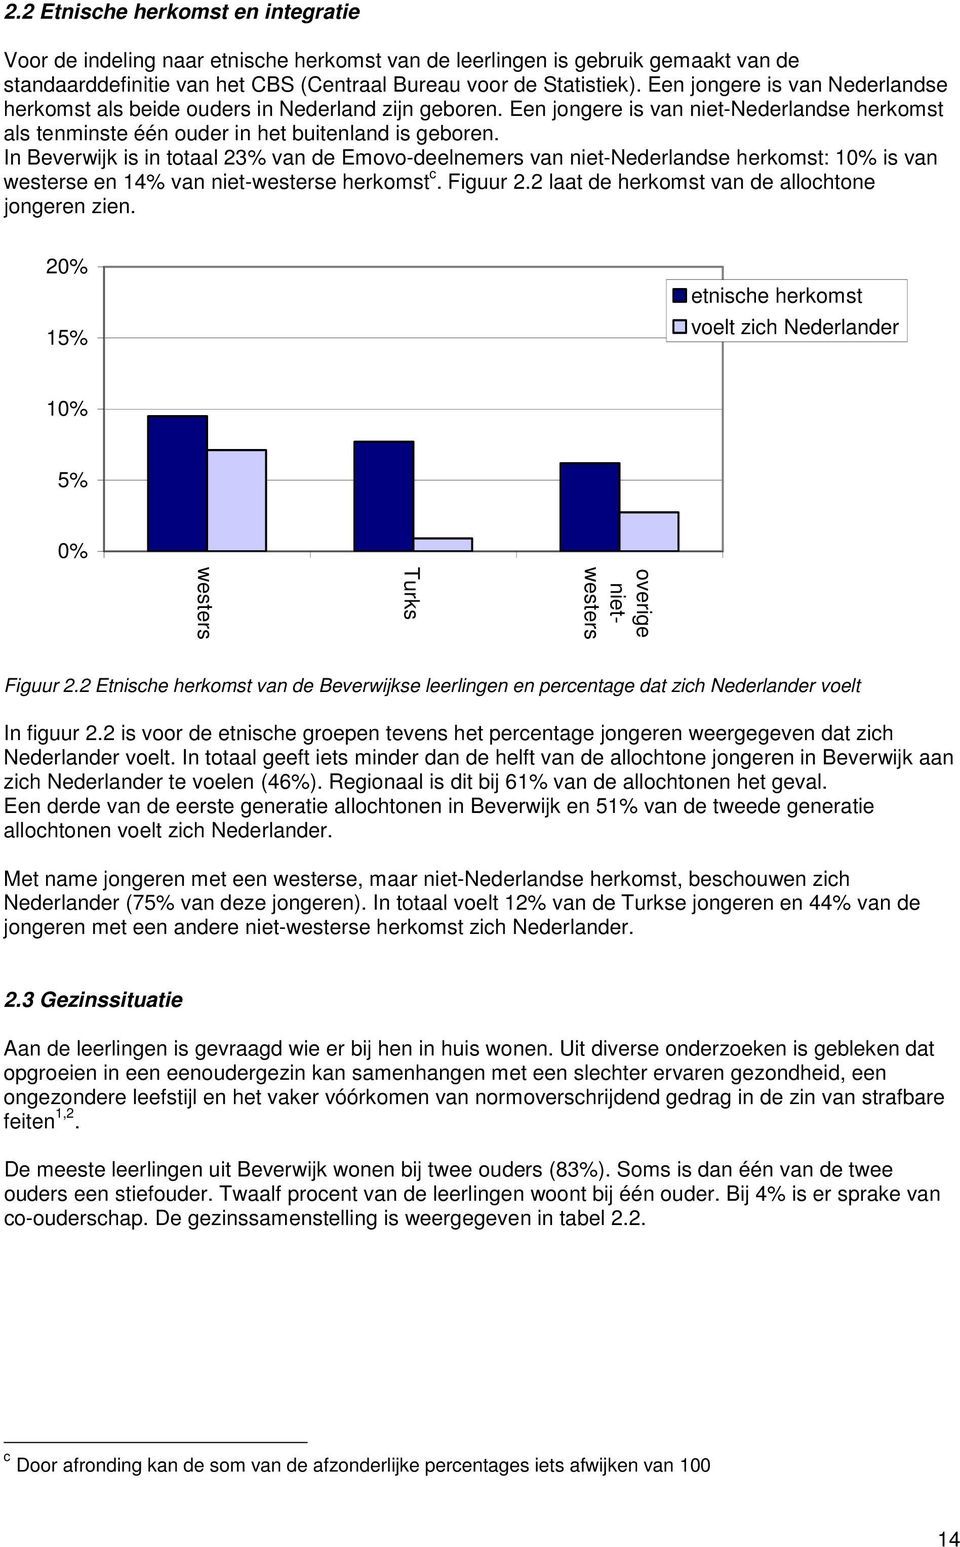 In Beverwijk is in totaal 23% van de Emovo-deelnemers van niet-nederlandse herkomst: is van westerse en 14% van niet-westerse herkomst c. Figuur 2.2 laat de herkomst van de allochtone jongeren zien.